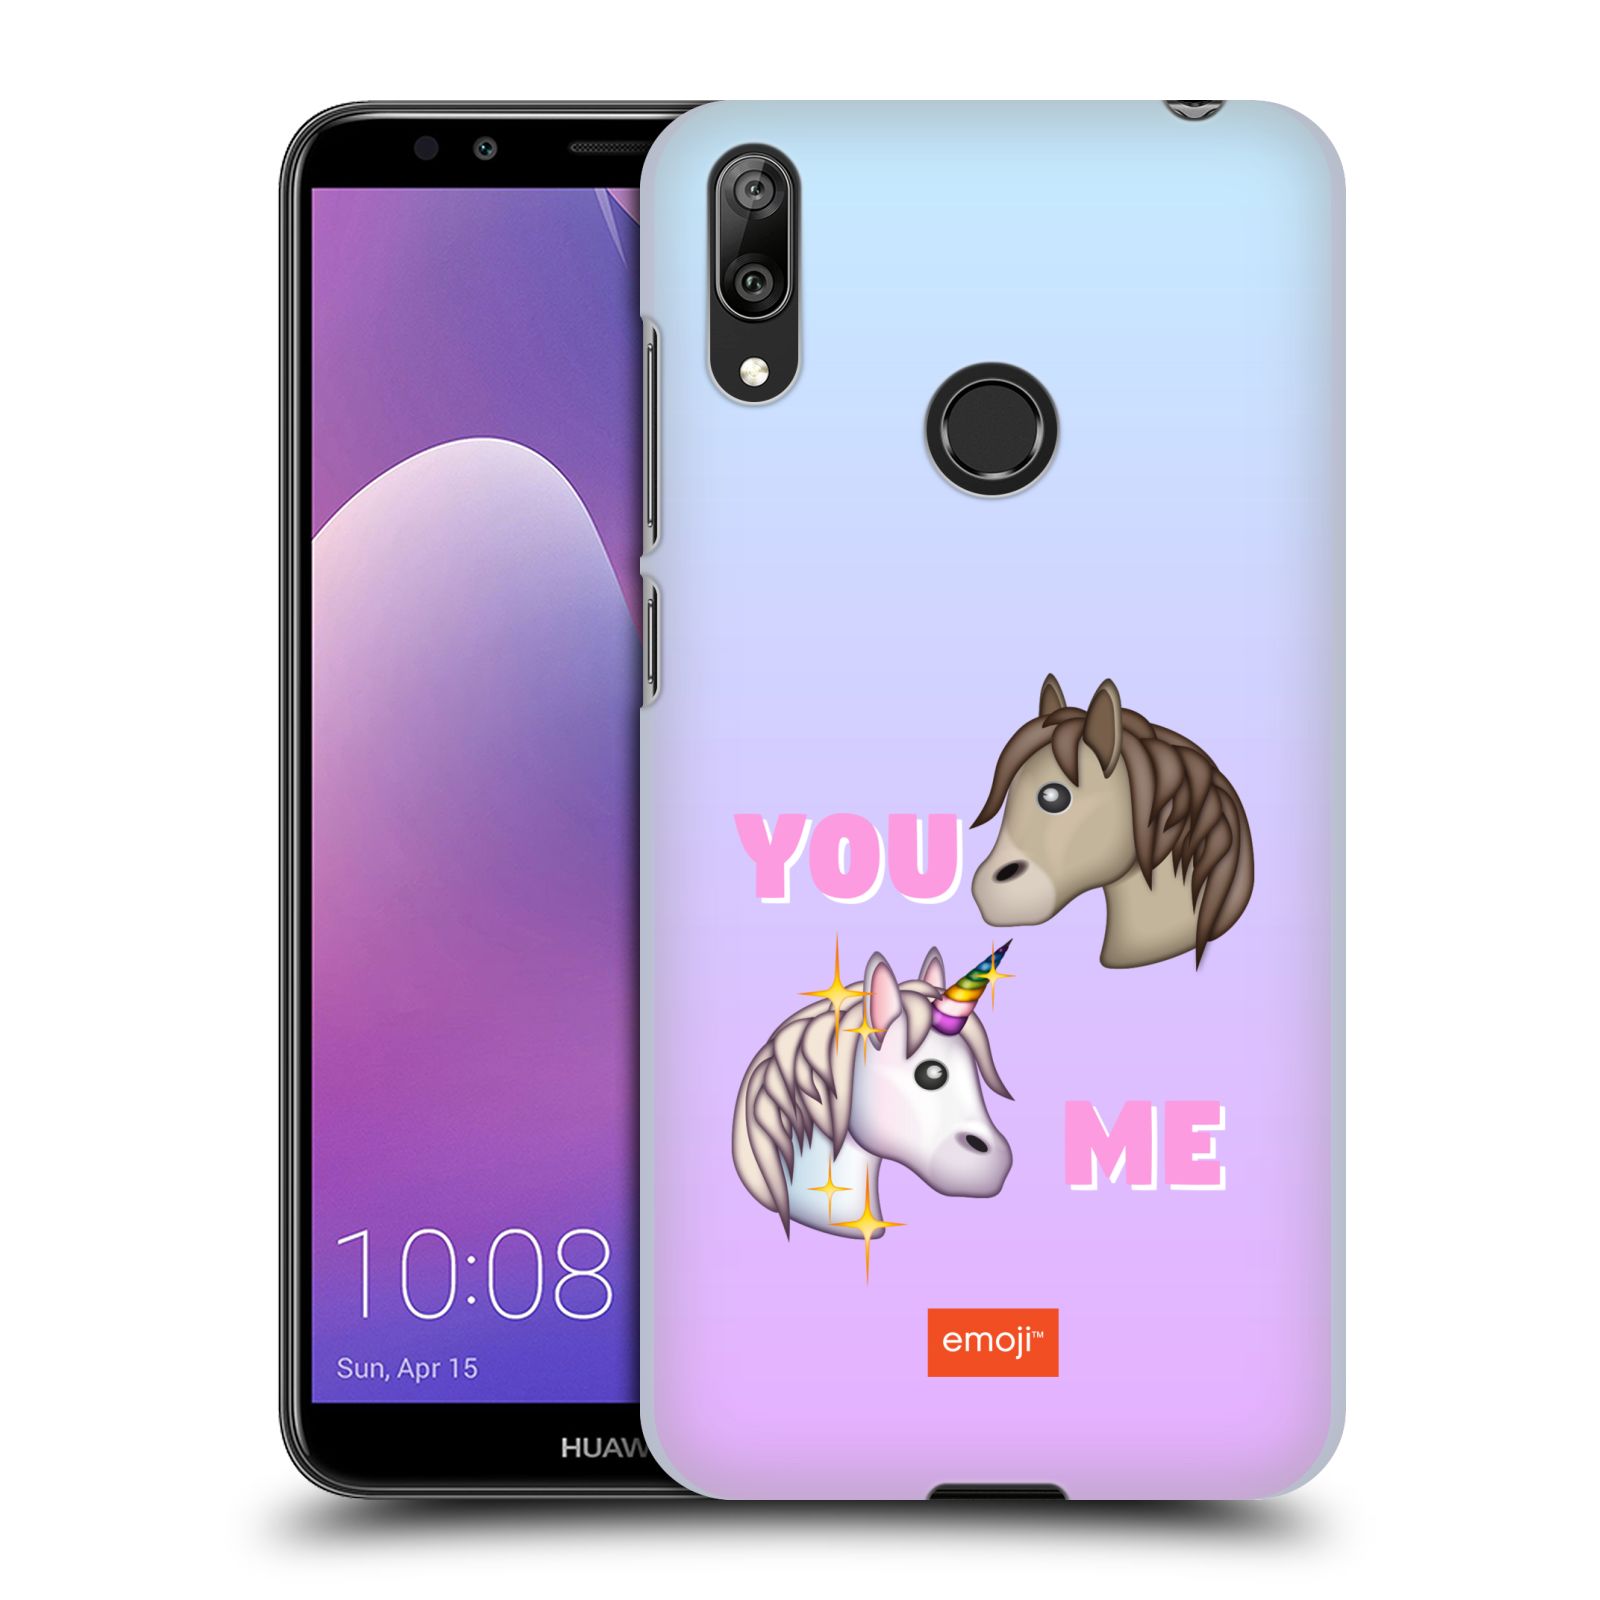 Pouzdro na mobil Huawei Y7 2019 - Head Case - smajlíci oficiální kryt EMOJI vzor dva jednorožci YOU and ME